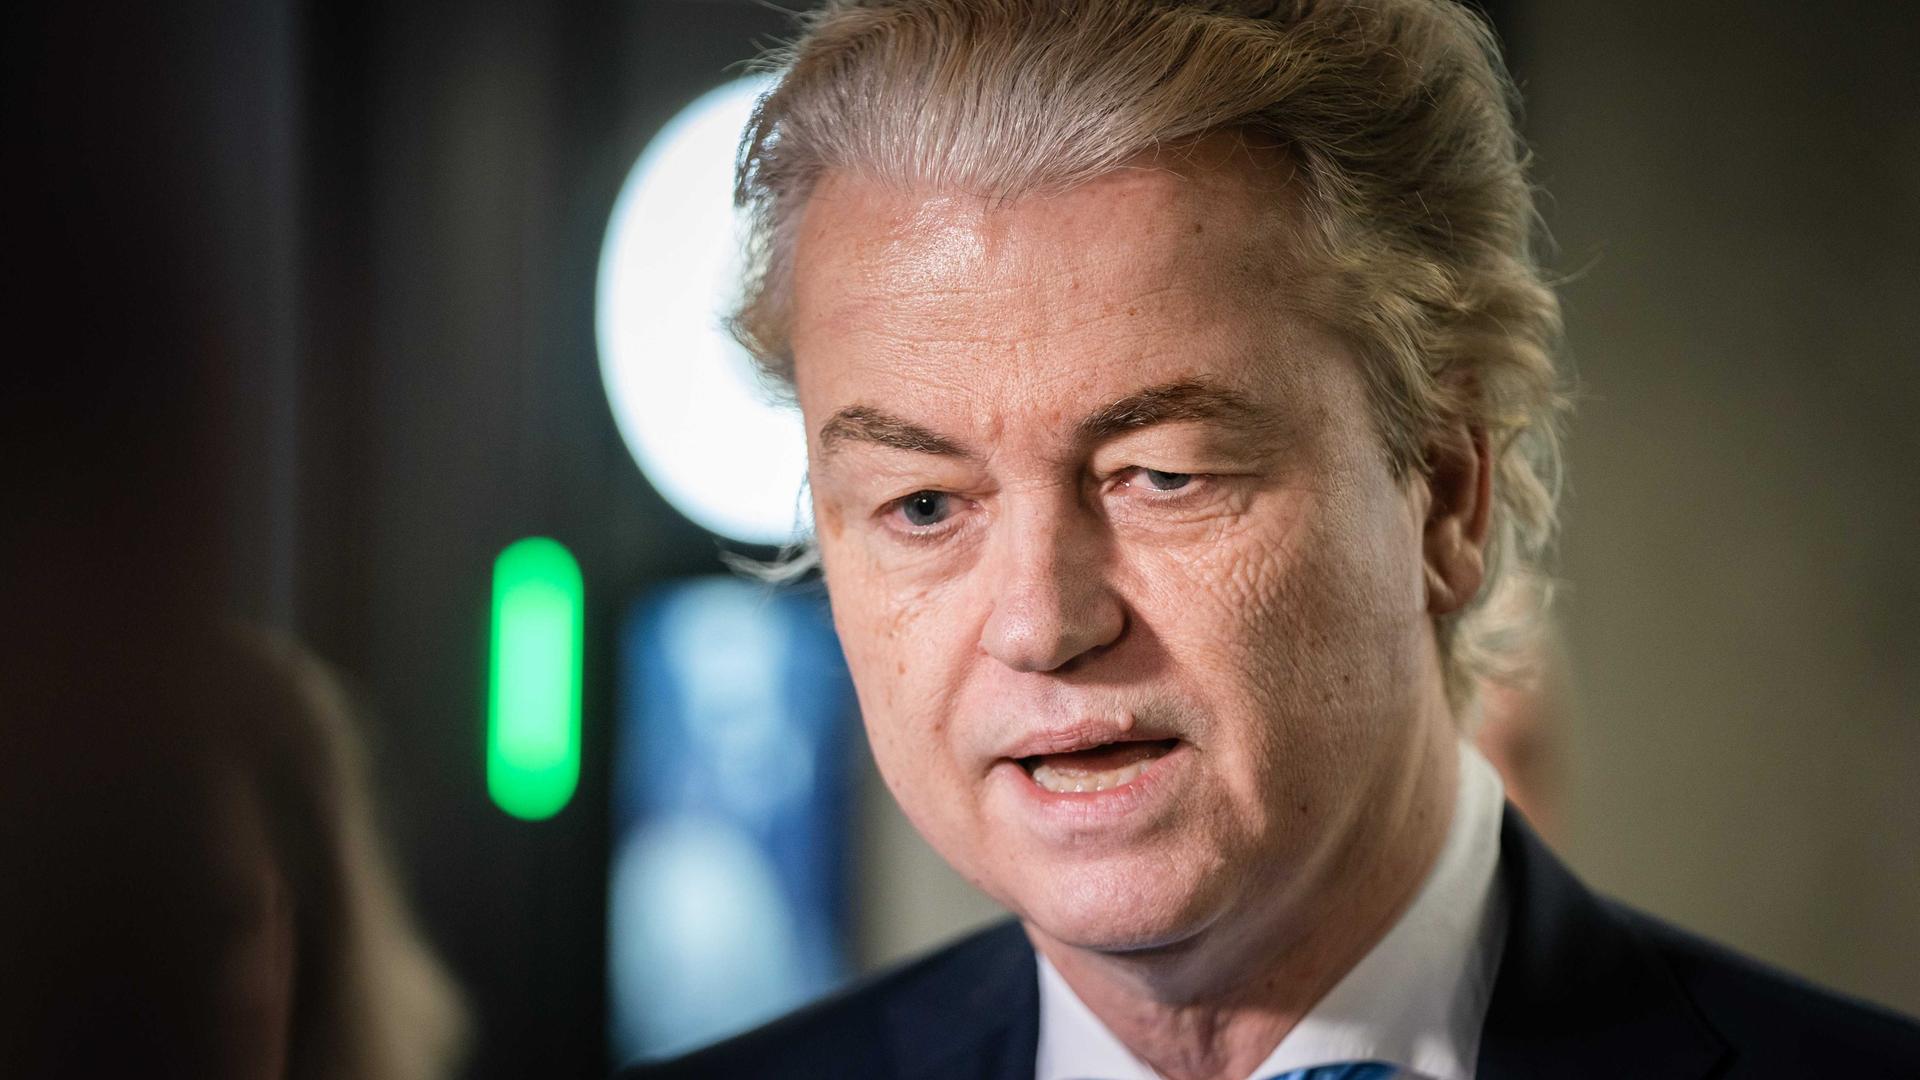 Geert Wilders (PVV), trifft im Aufstellungsbereich des Repräsentantenhauses ein. Er trägt ein dunkles Sakko, hellblaue Krawatte und ein weißes Hemd.